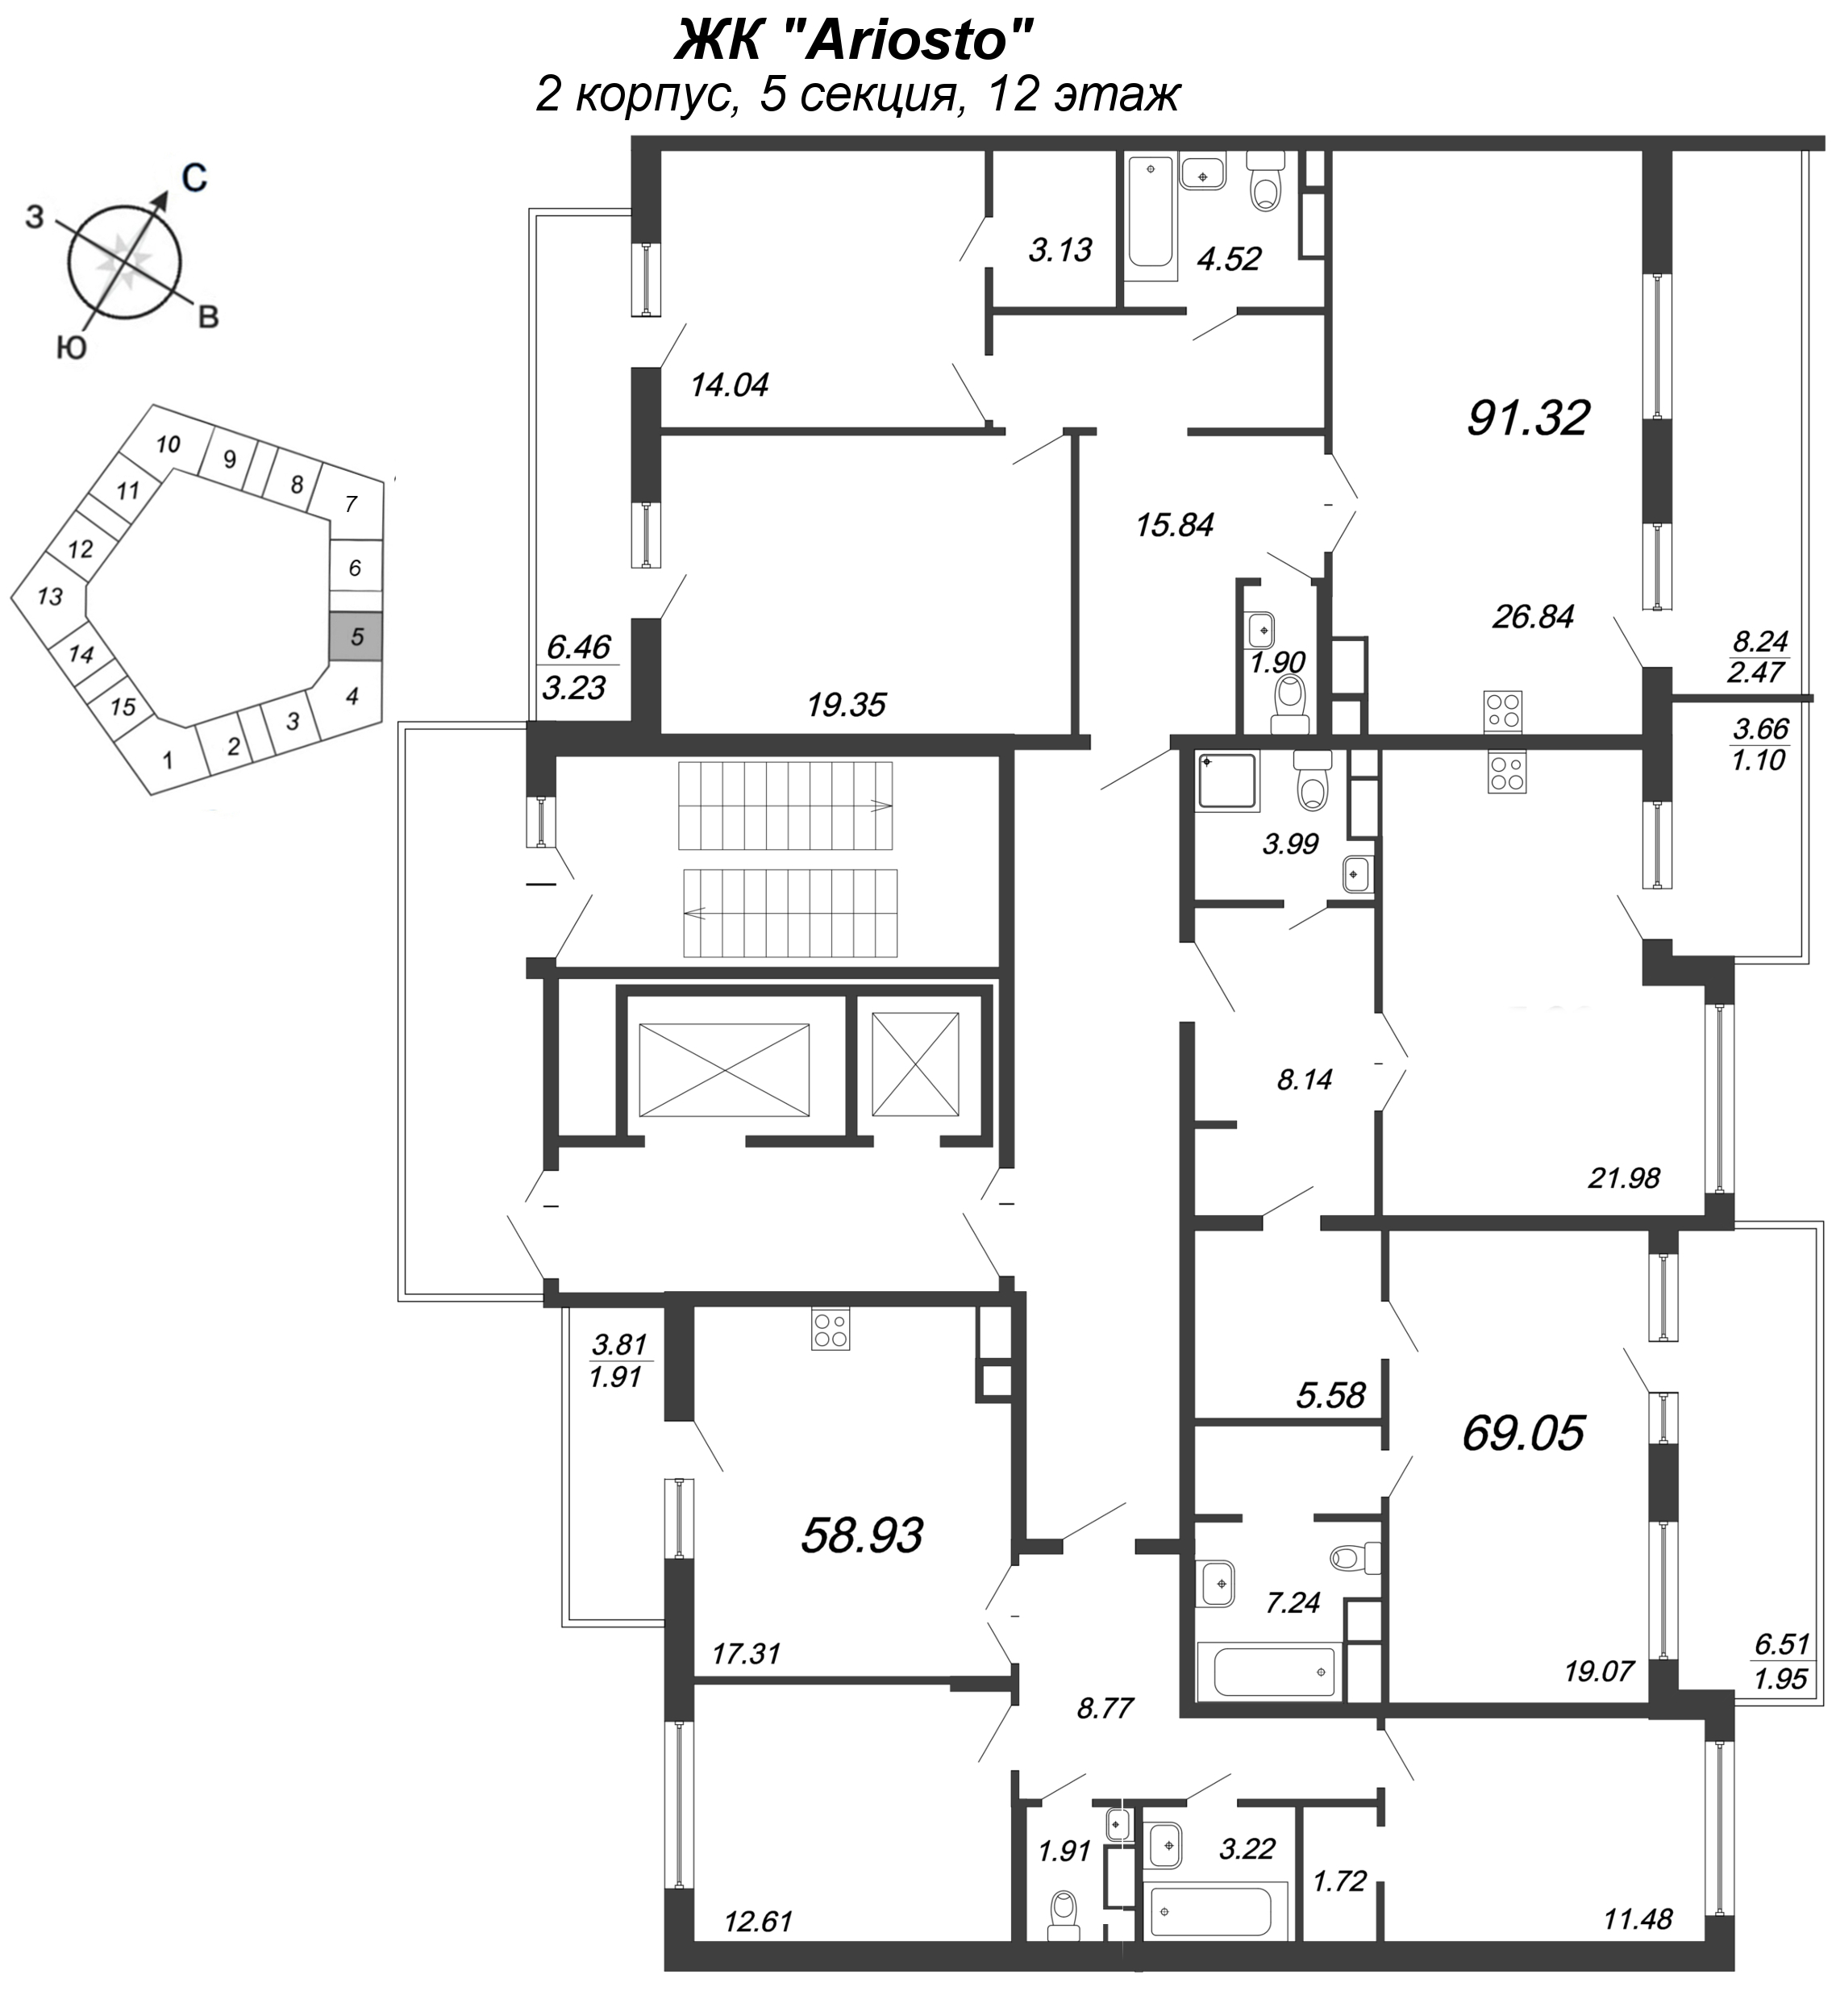 2-комнатная (Евро) квартира, 69.05 м² в ЖК "Ariosto" - планировка этажа